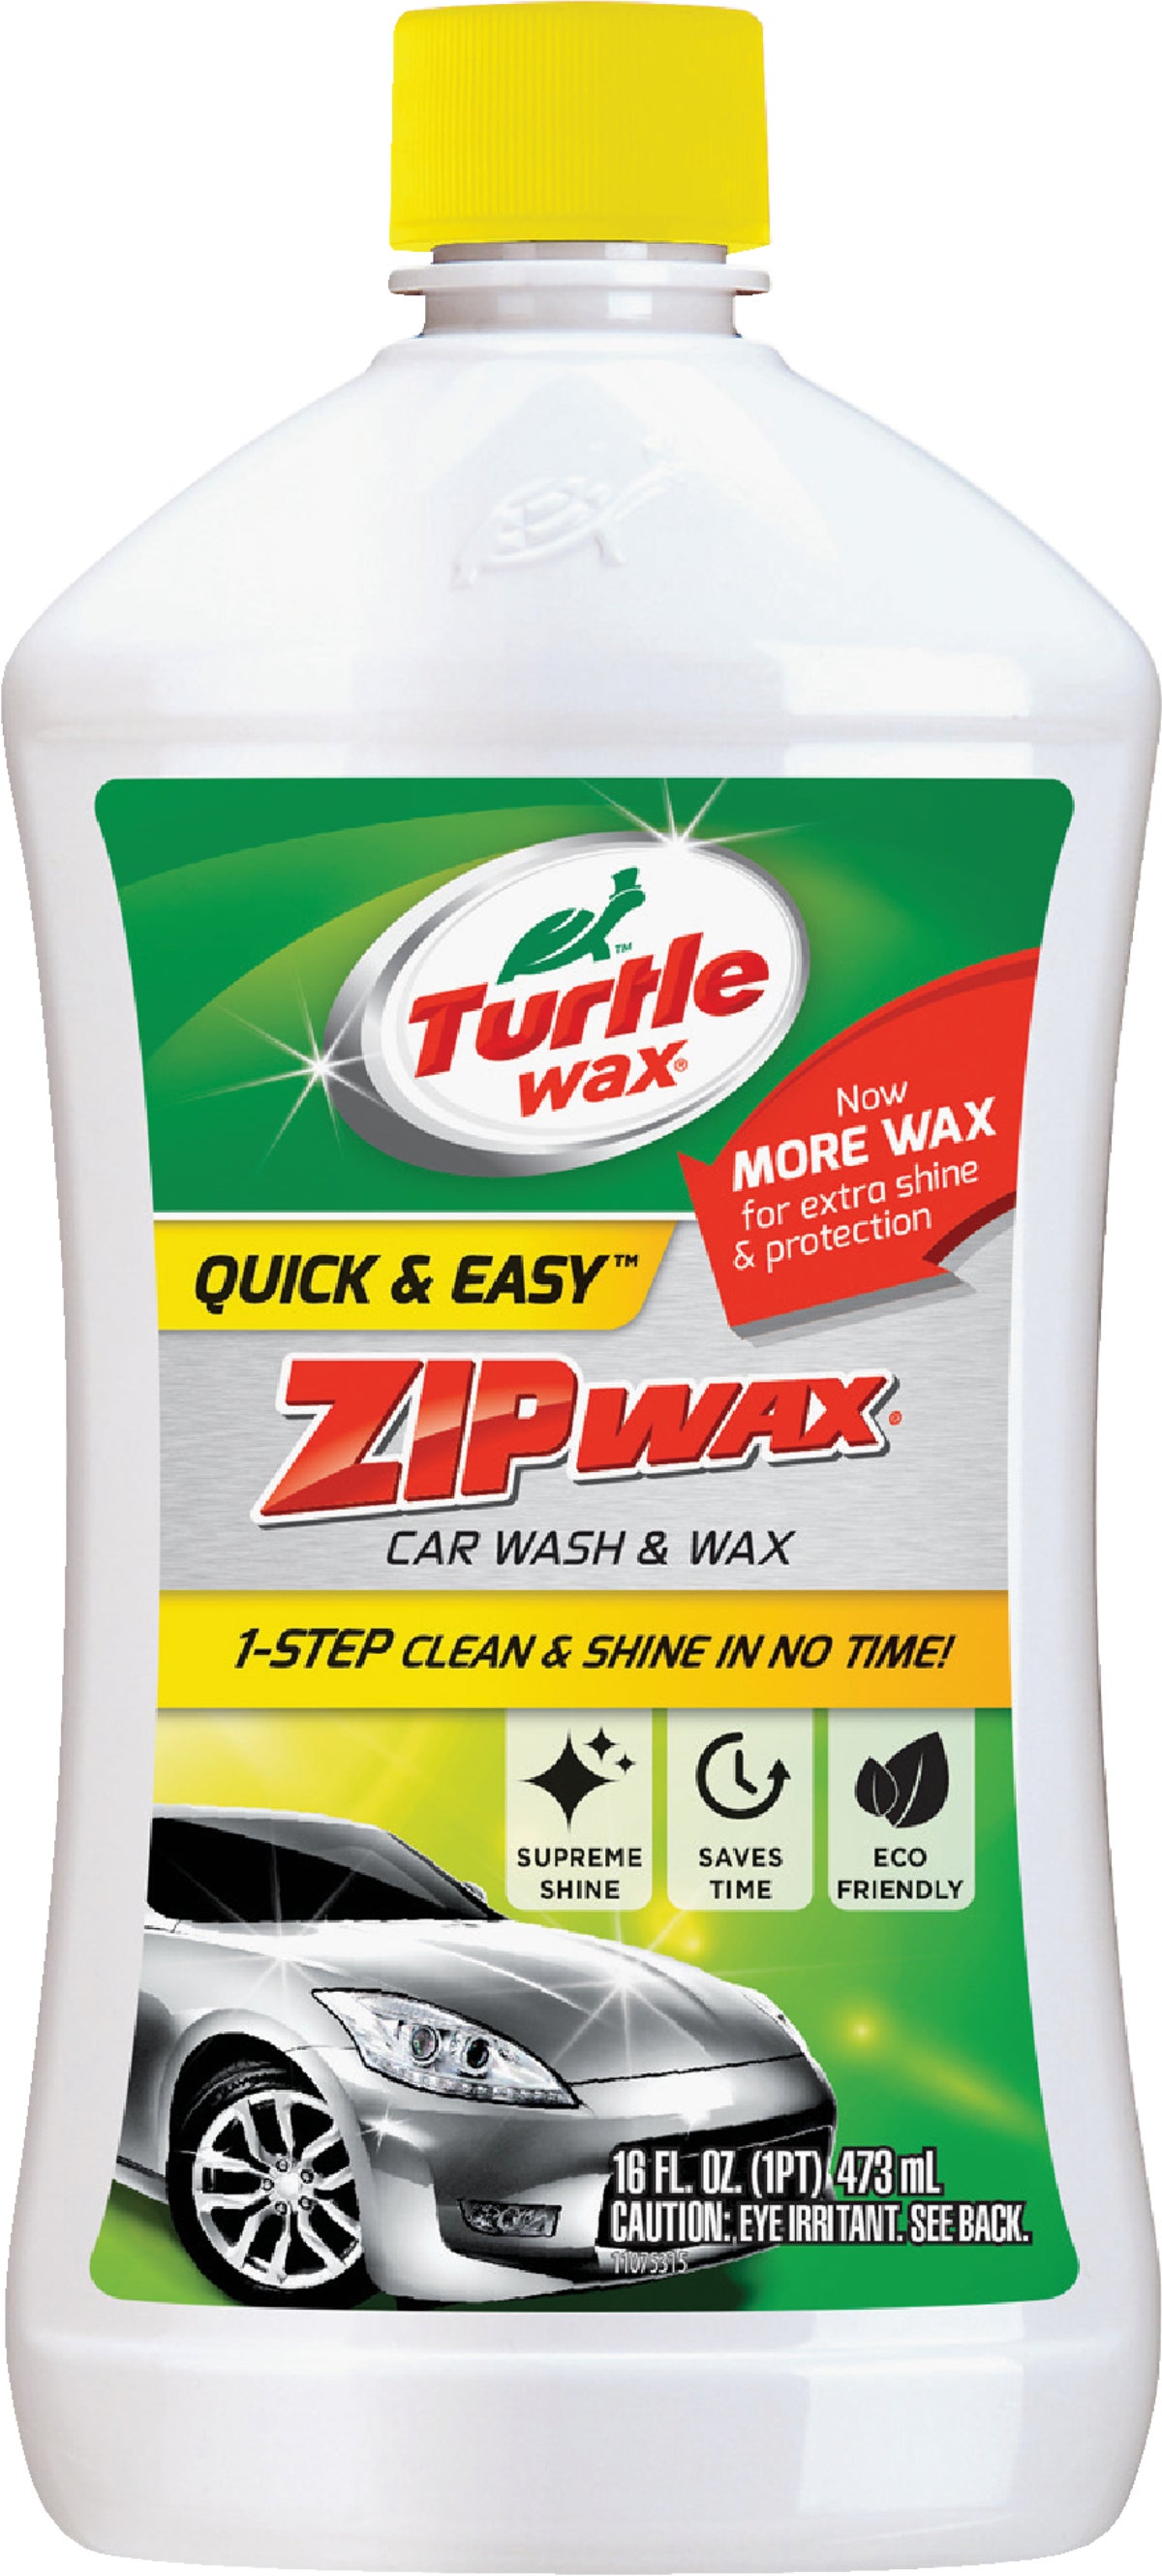 Turtle Wax Car Wash, M.A.X-Power - 100 fl oz